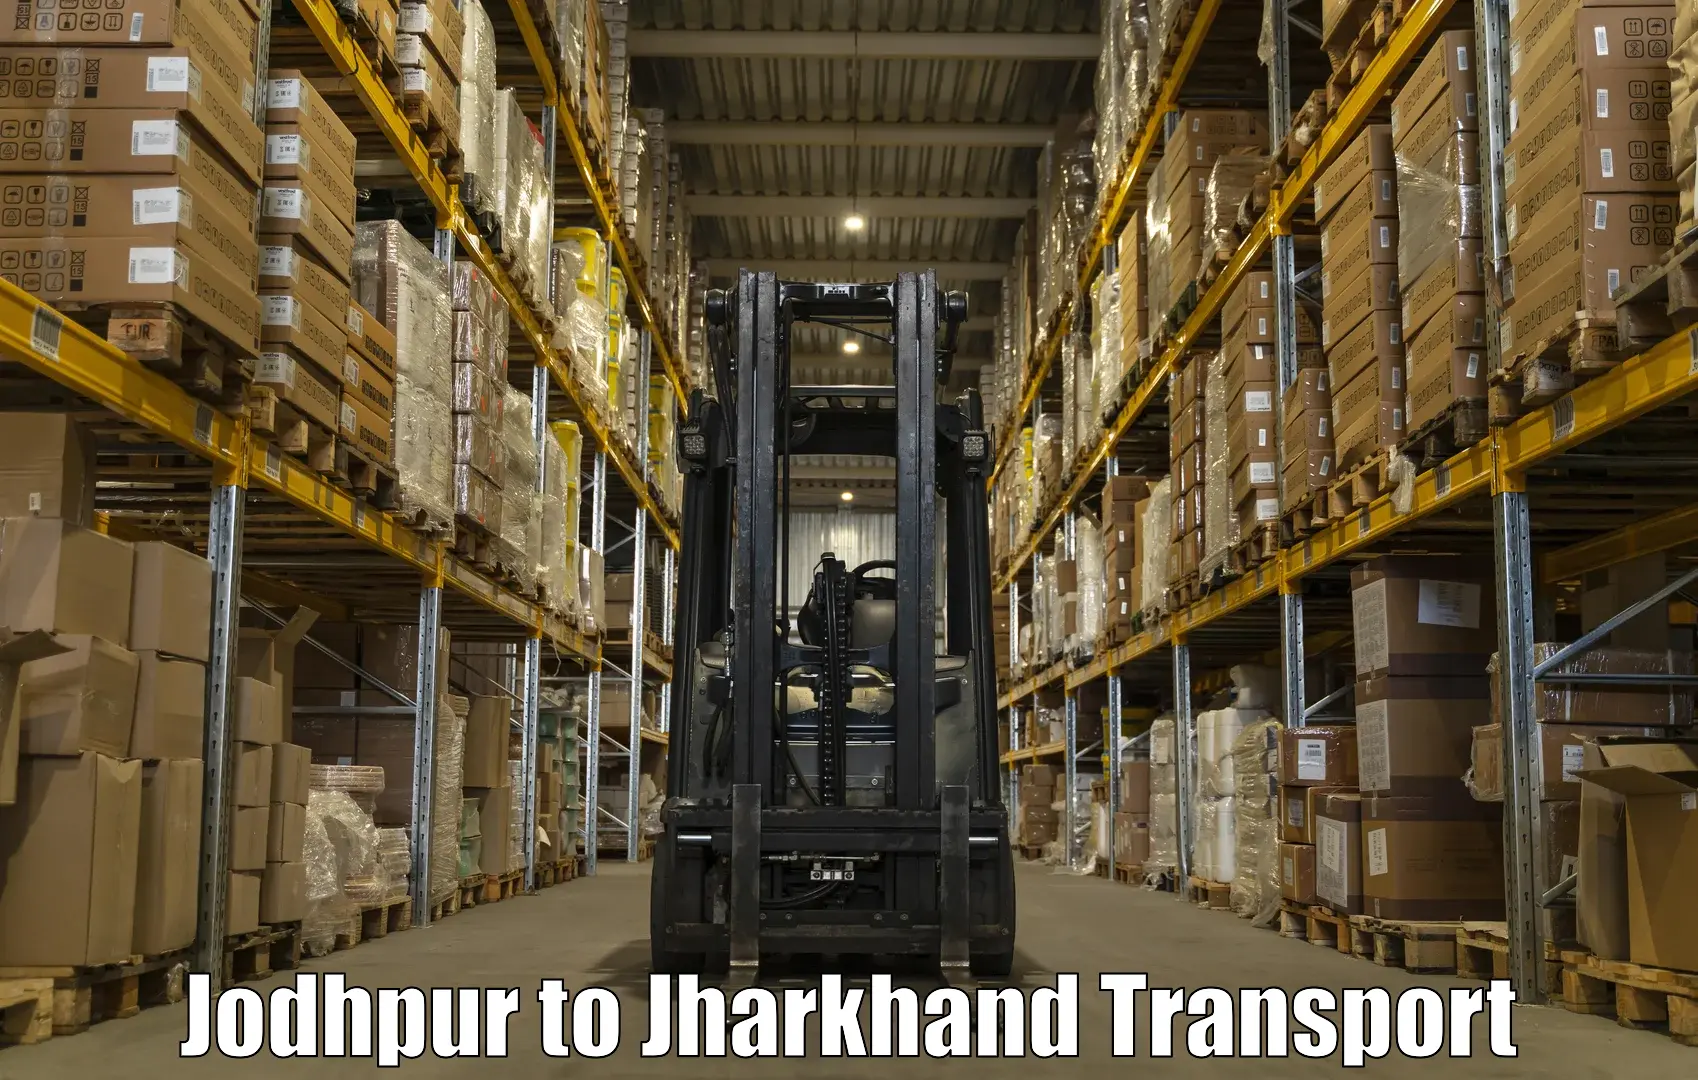 Furniture transport service Jodhpur to Garhwa